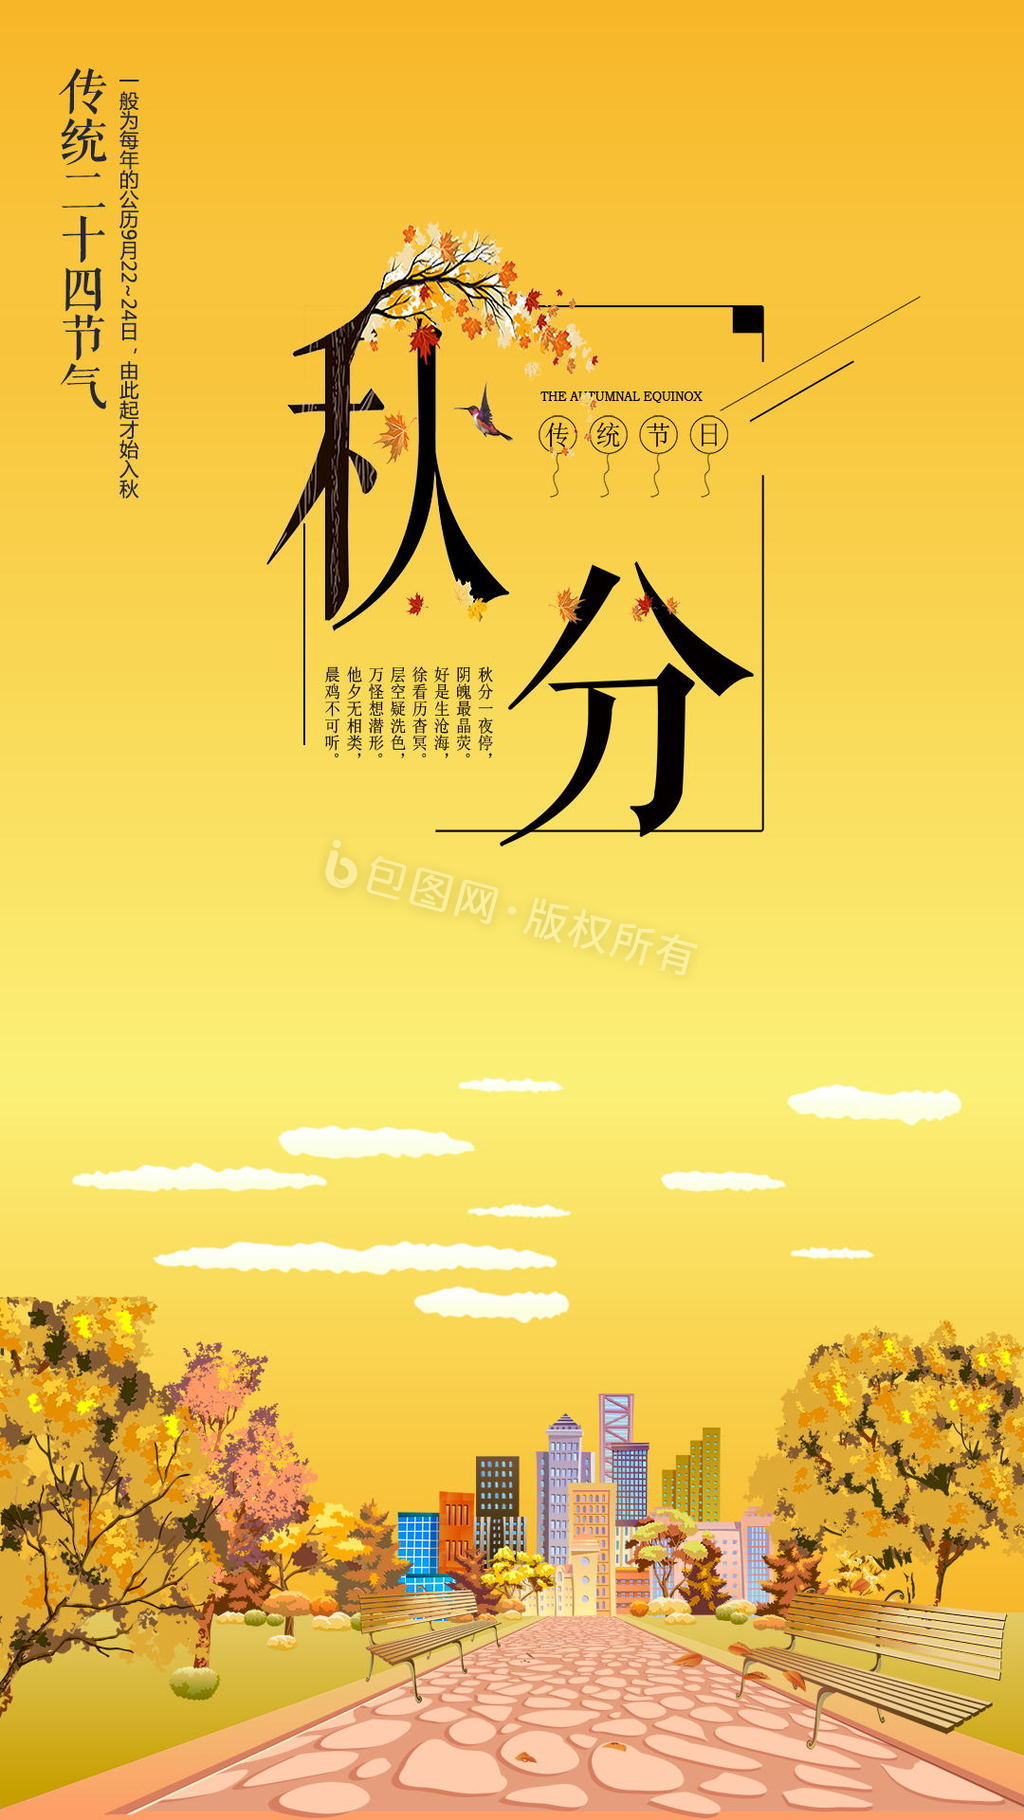 中国二十四节日秋分节日动态海报